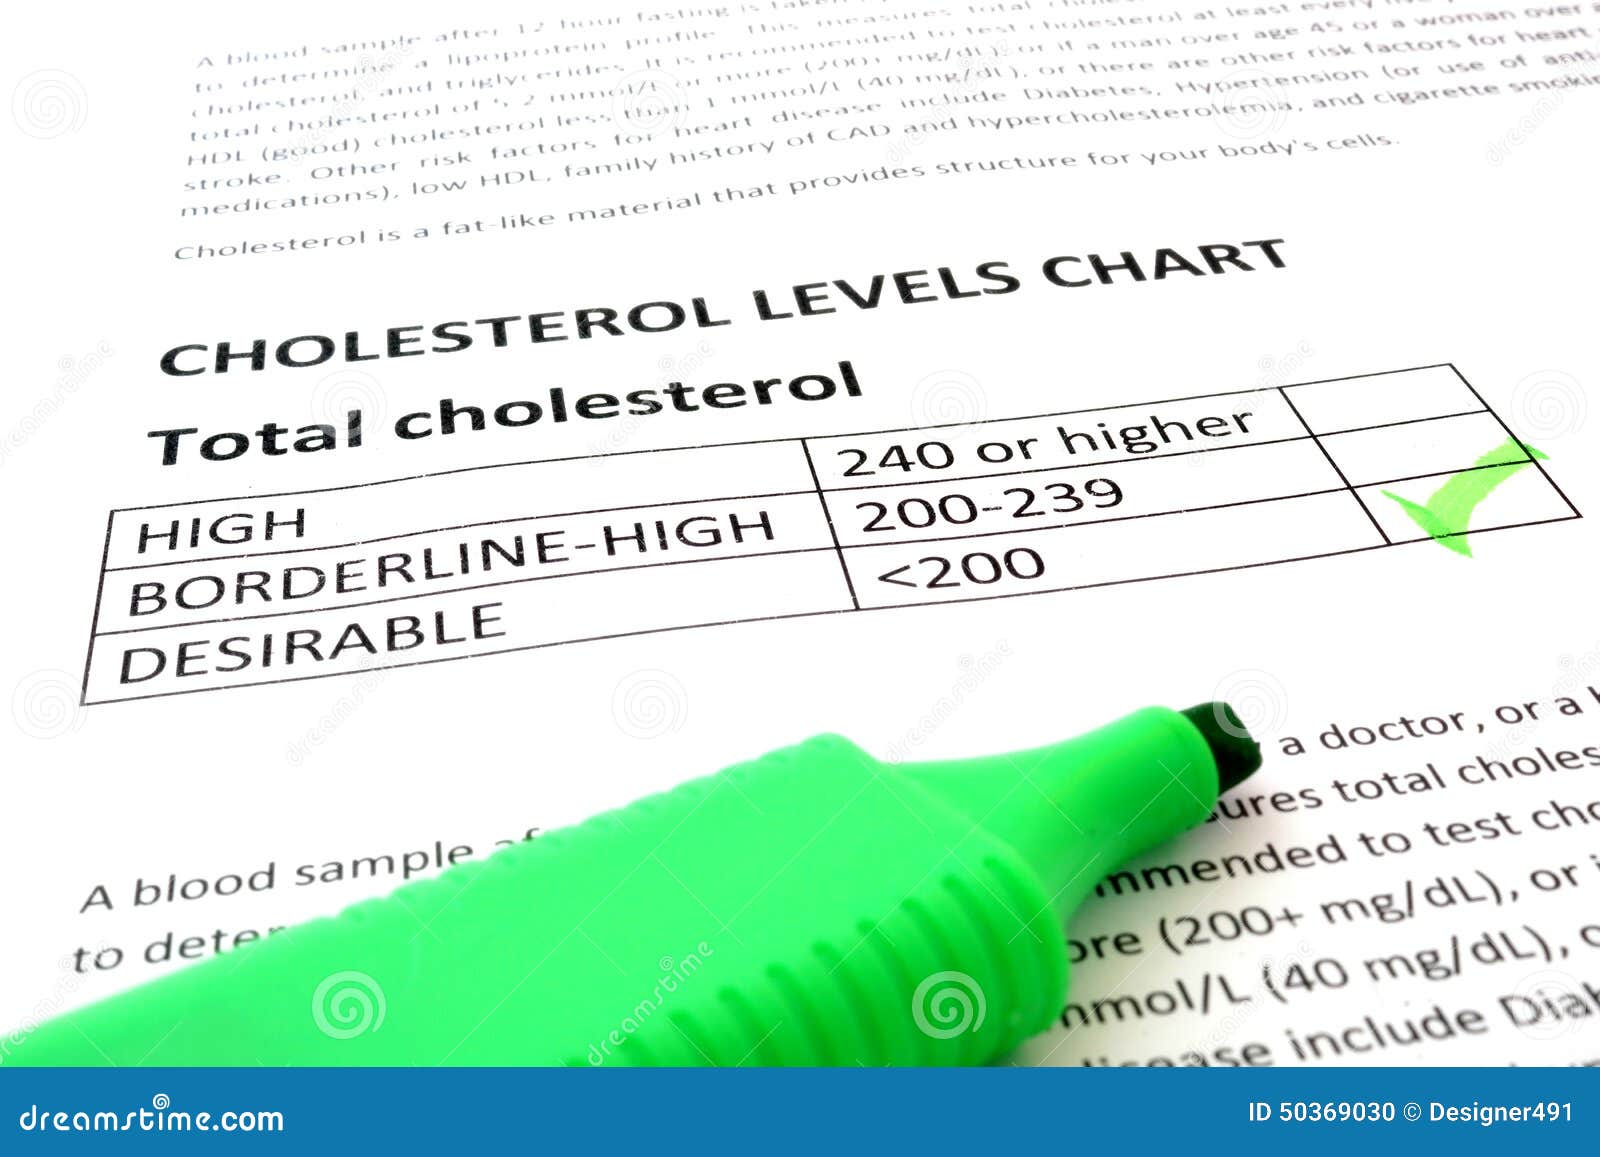 Cholesterol Levels Chart